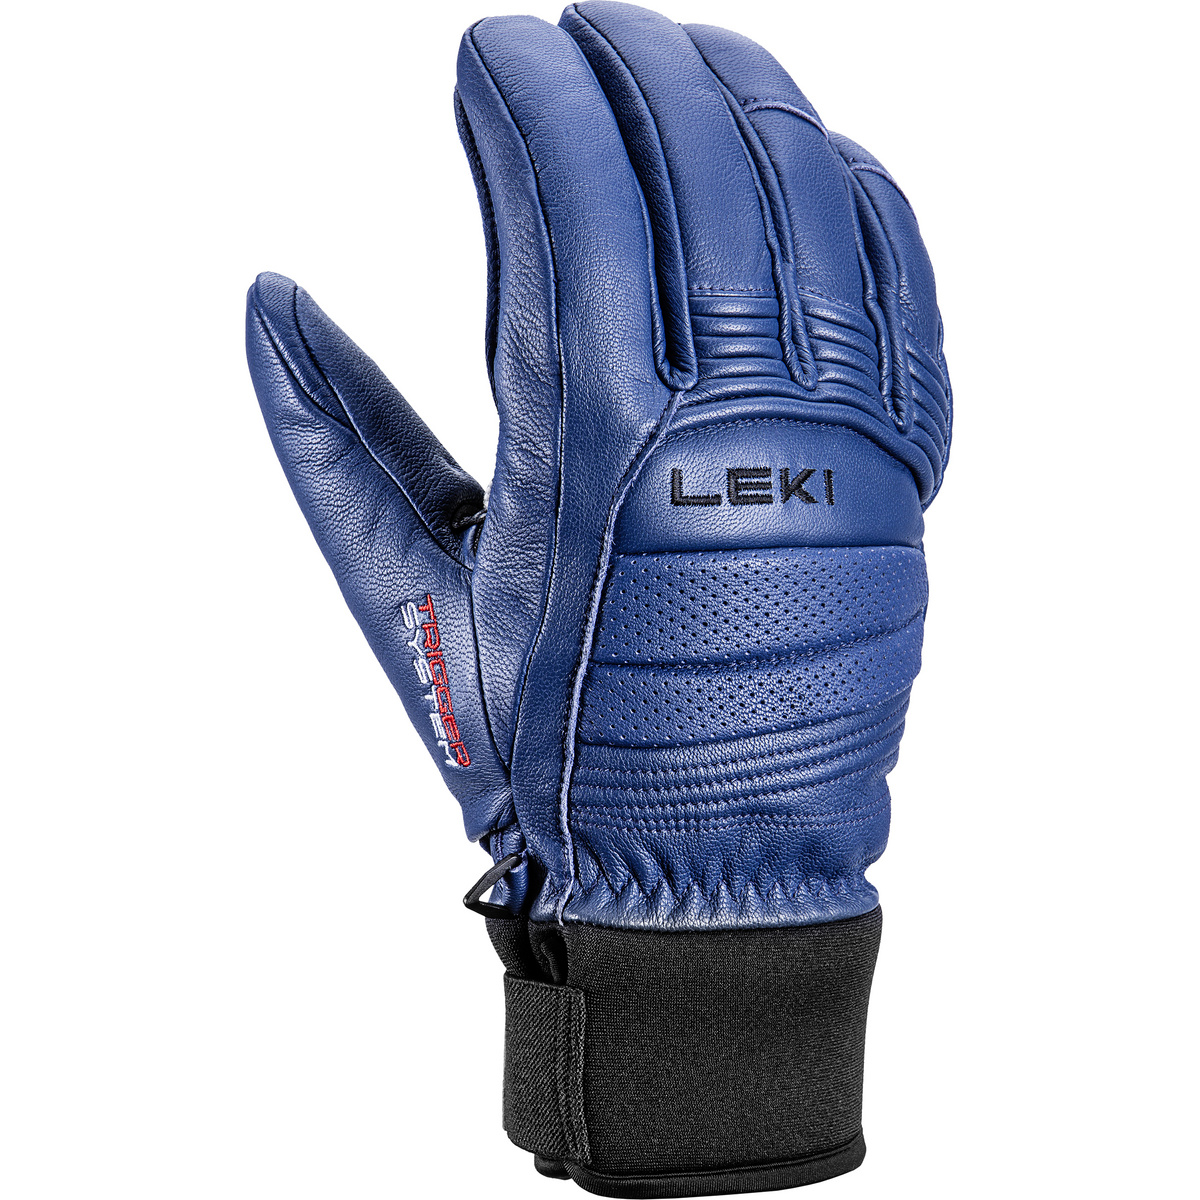 Leki Copper 3D Pro Handschuhe von Leki